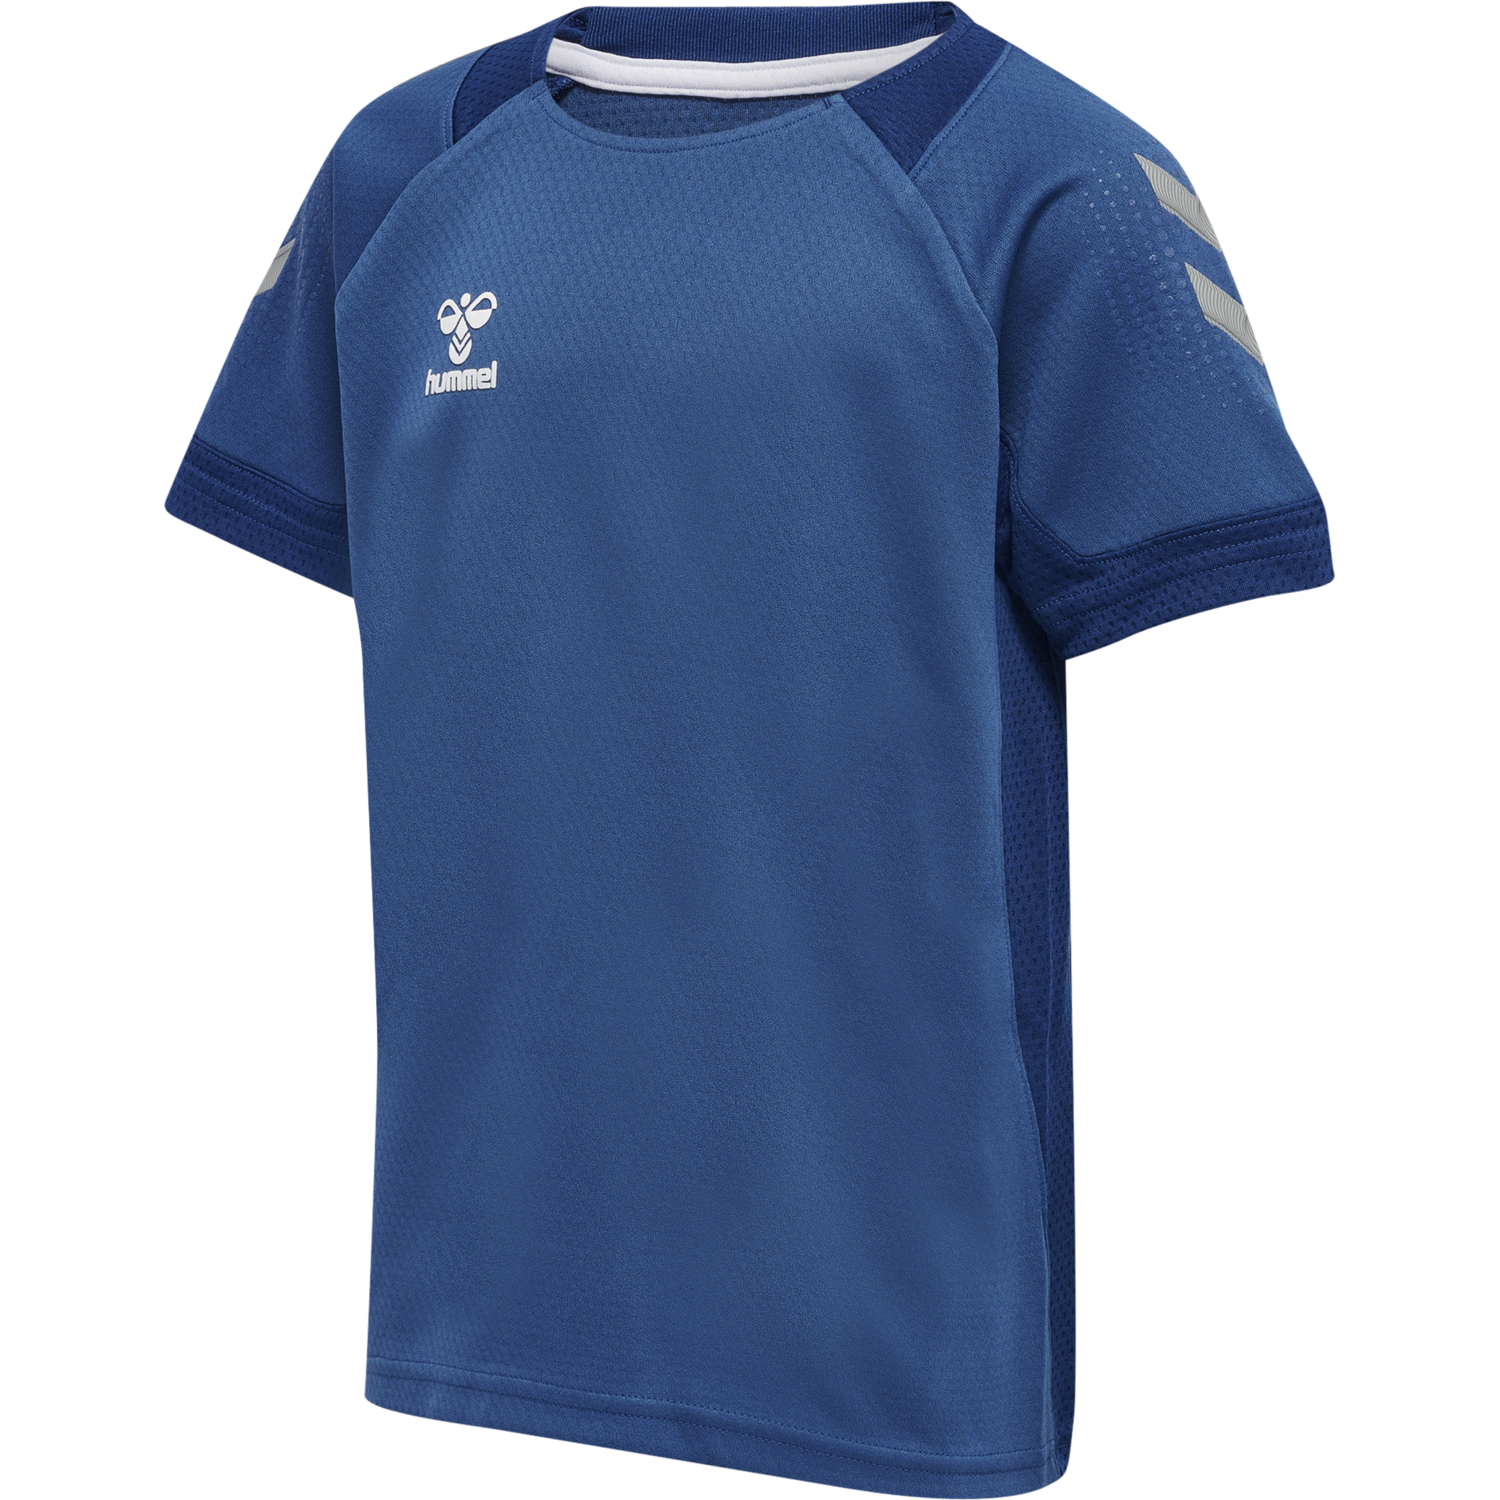 Details about   Hummel Football Soccer Kids Training Sports Short Sleeve SS Jersey Shirt Top 